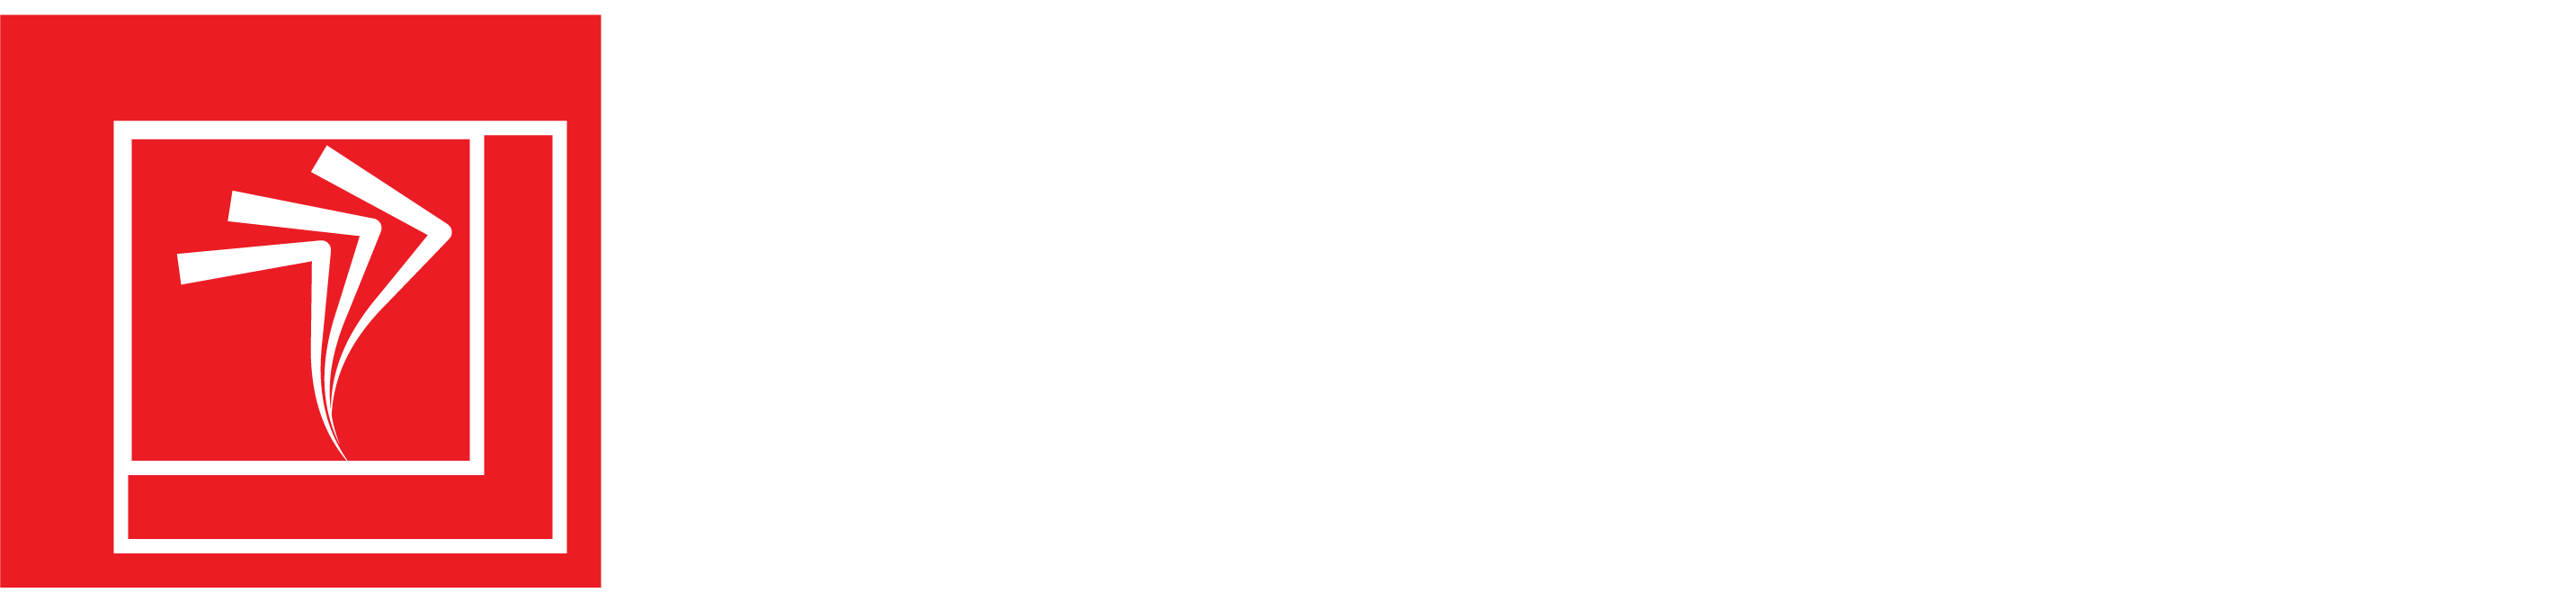 cashflowinvestment.ltd